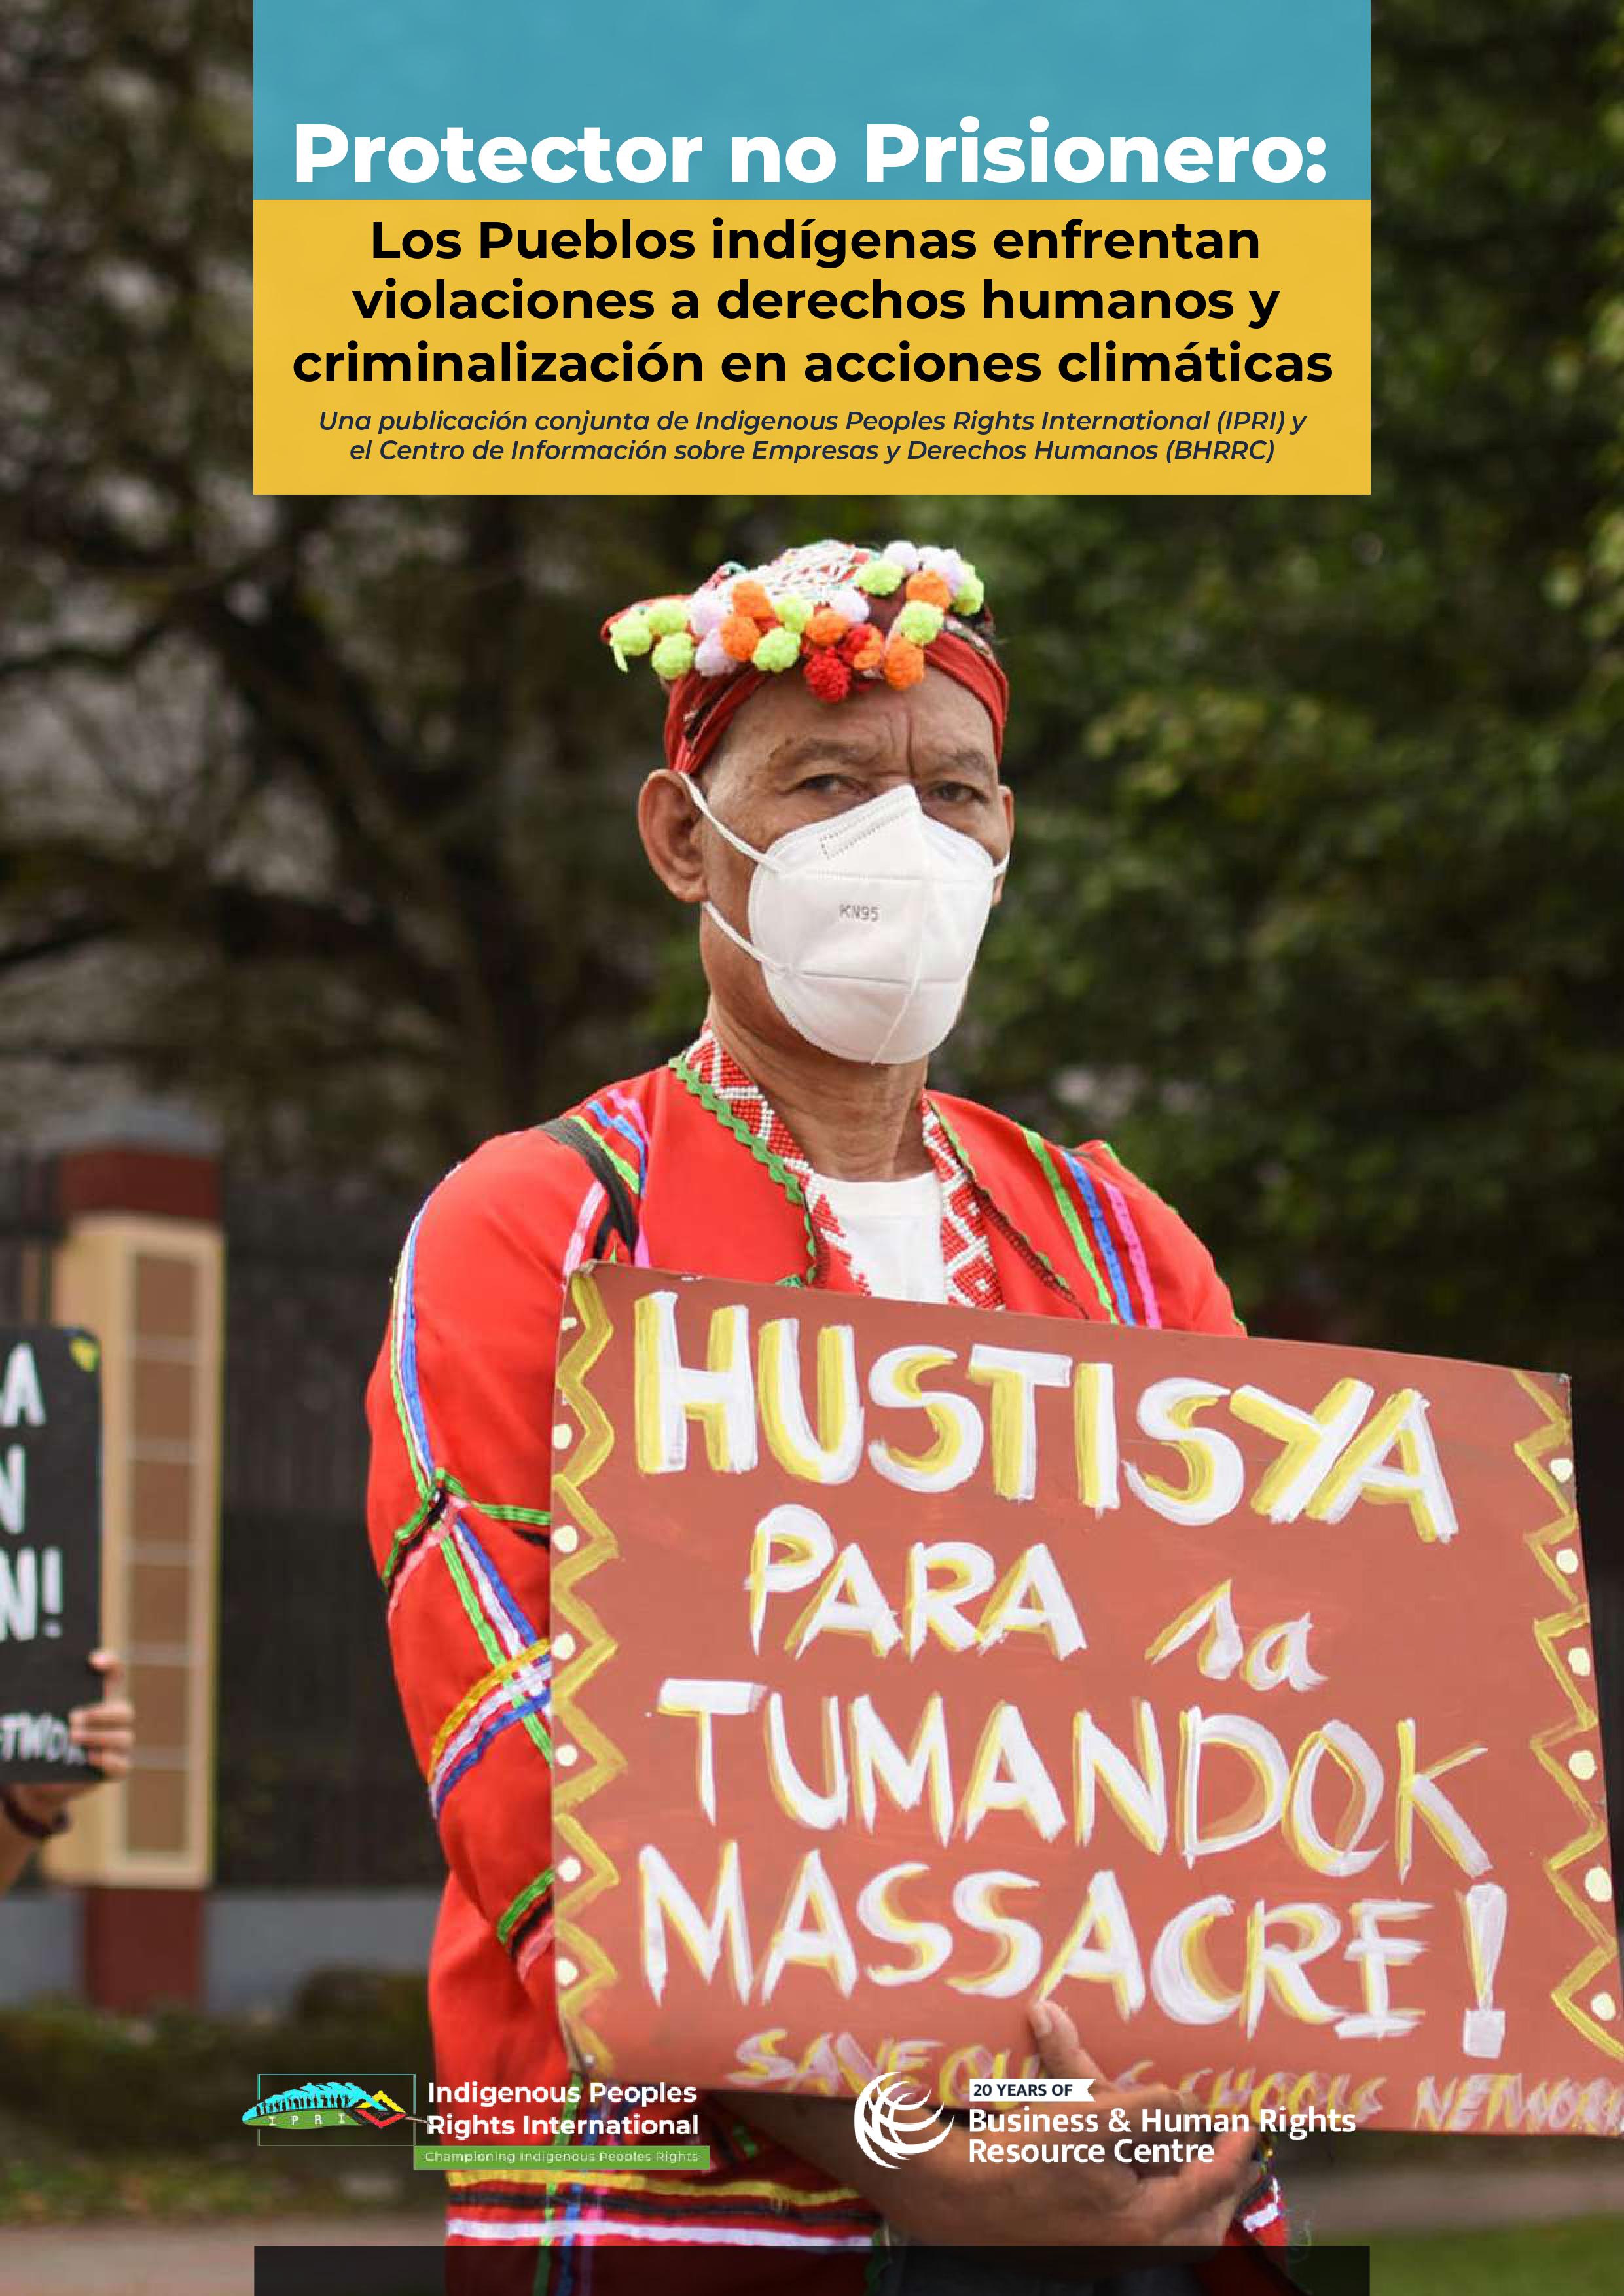 Protector no Prisionero: Los Pueblos indígenas enfrentan violaciones a derechos humanos y criminalización en acciones climáticas